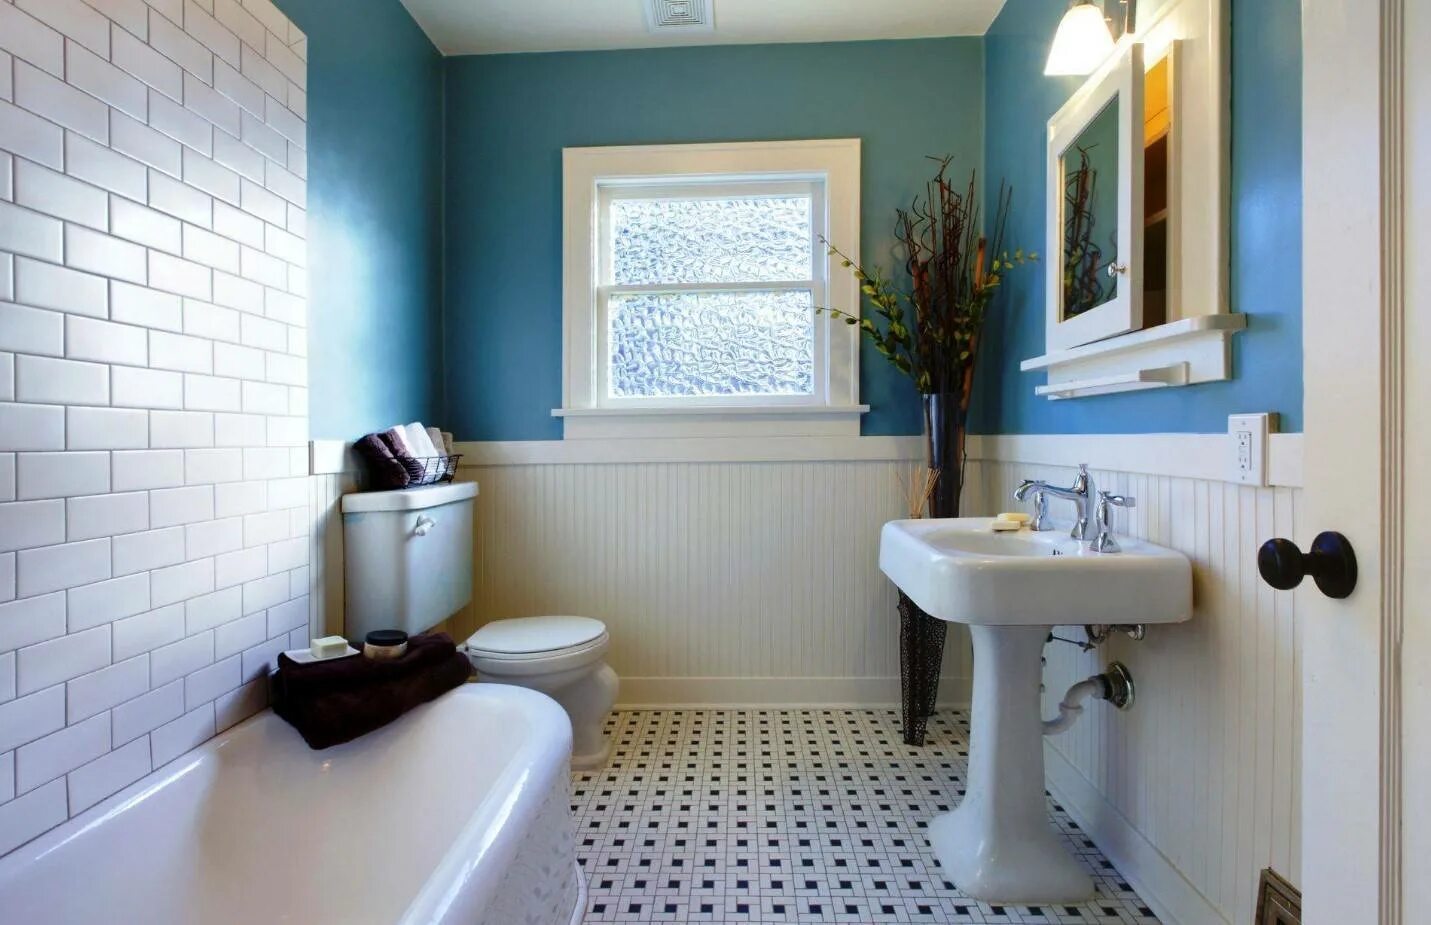 Ремонт ванной туалета своими руками. Отделка ванной комнаты плитка и краска. Отделка ванной комнаты без плитки. Интерьер ванной комнаты краской. Санузел с окрашенными стенами.